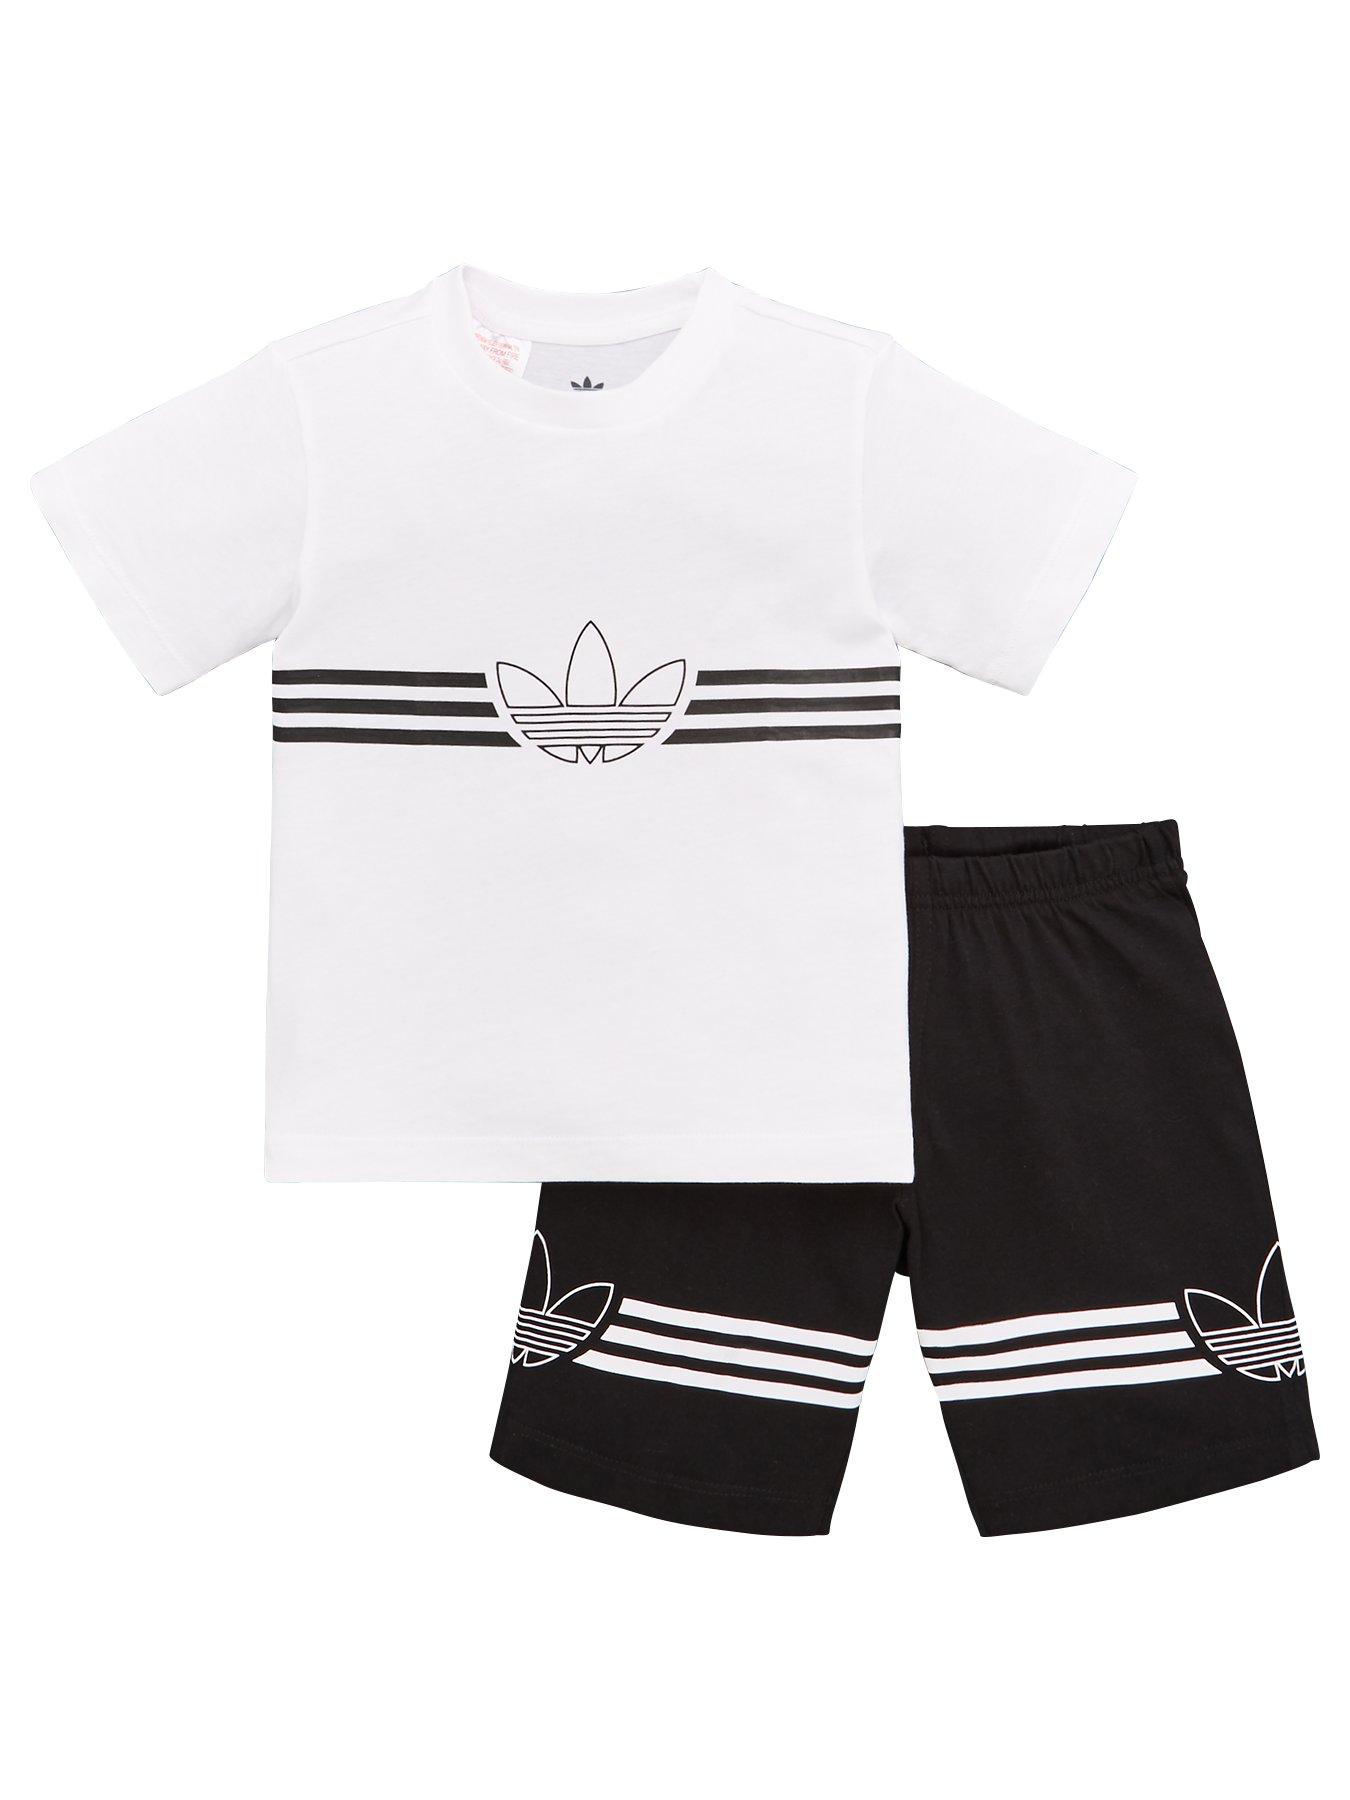 mens adidas shorts and shirt set